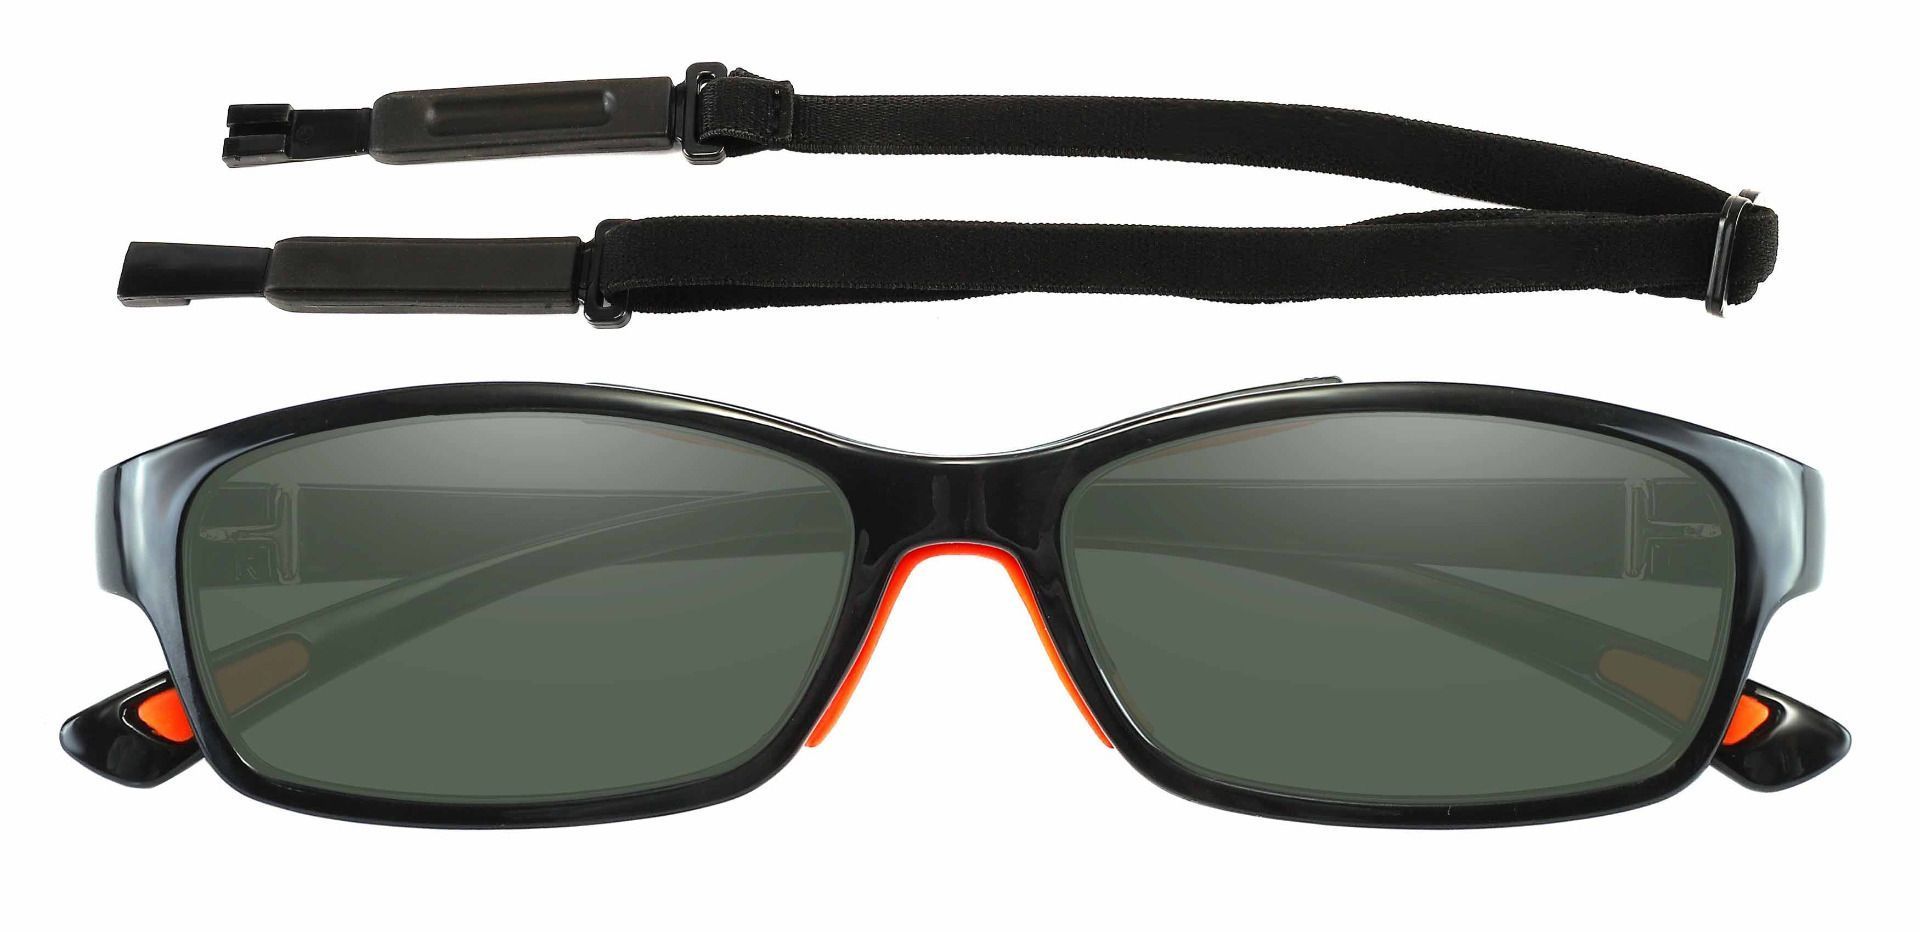 Glynn Rectangle Progressive Sunglasses - Black Frame With Green Lenses